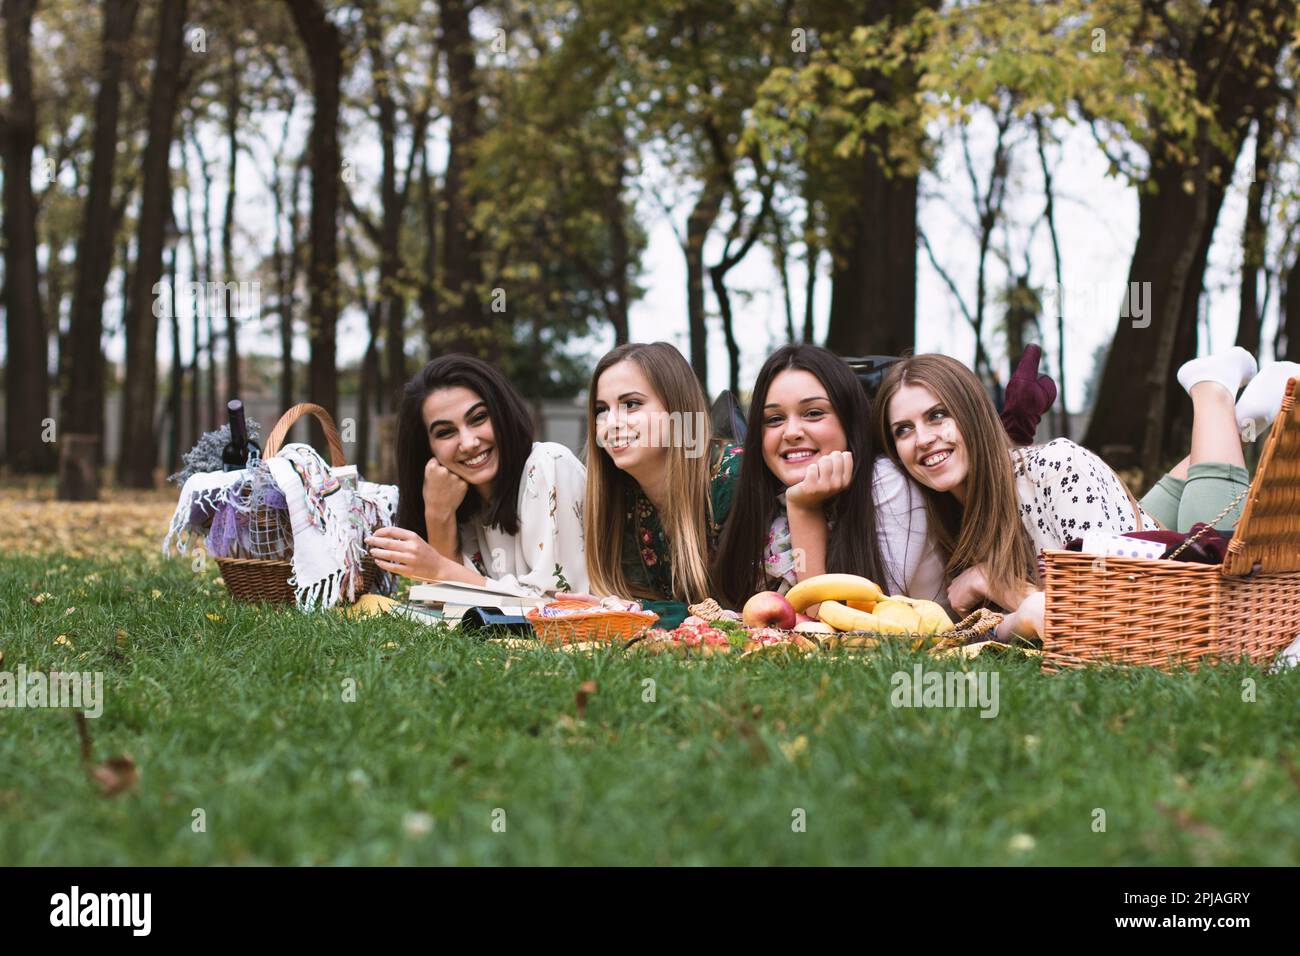 Eine Gruppe von vier Frauen auf einem lustigen Herbstpicknick im Park, die auf einer Decke liegen und sich amüsieren. Stockfoto